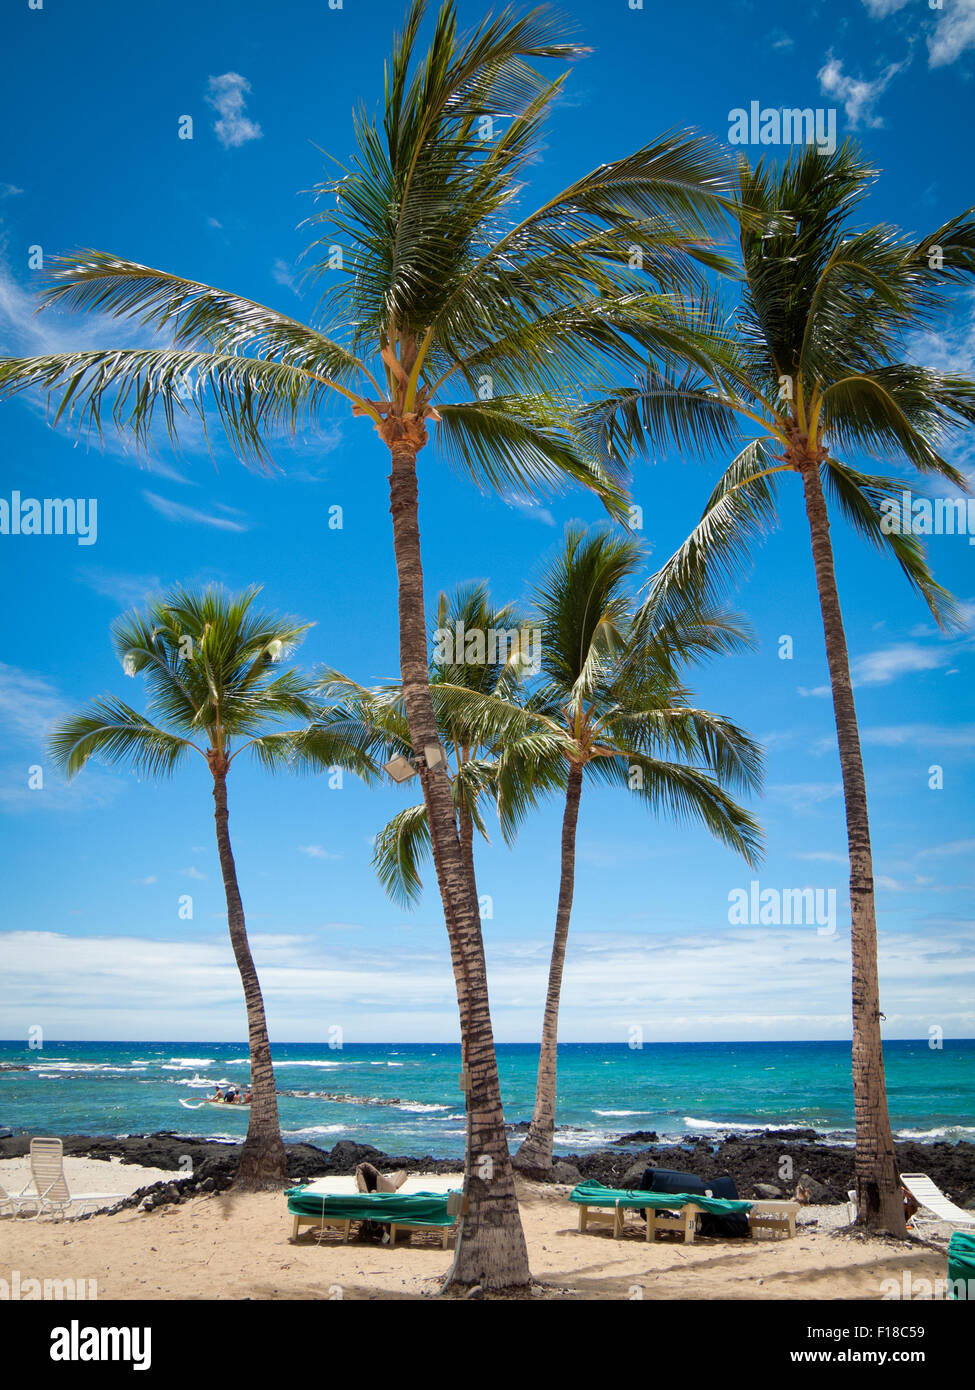 Ein Blick auf Palmen und Pauoa Bay im Fairmont Orchid, ein luxuriöses Hotel an der Kohala Küste von Hawaii (Hawaii)-Insel. Stockfoto